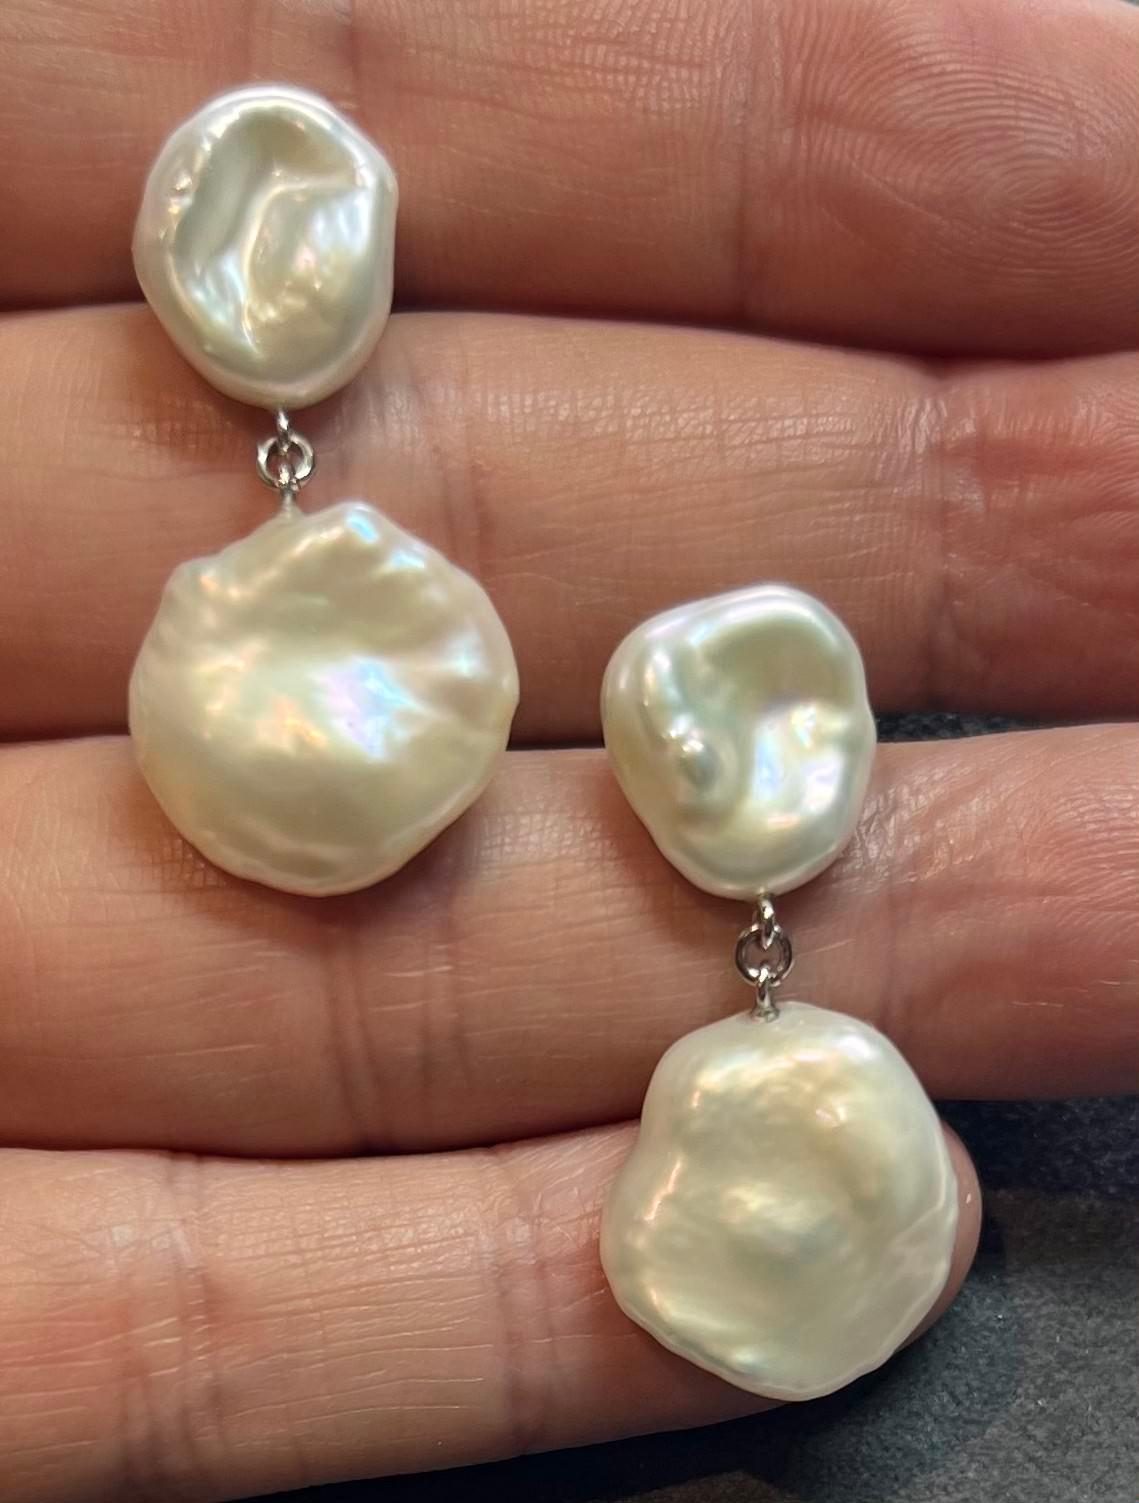 Boucles d'oreilles pendantes en or blanc 14k avec perles d'eau douce de qualité certifiées $799 018542

Il s'agit d'un bijou unique en son genre, fait sur mesure et de style glamour !

Rien ne dit mieux 